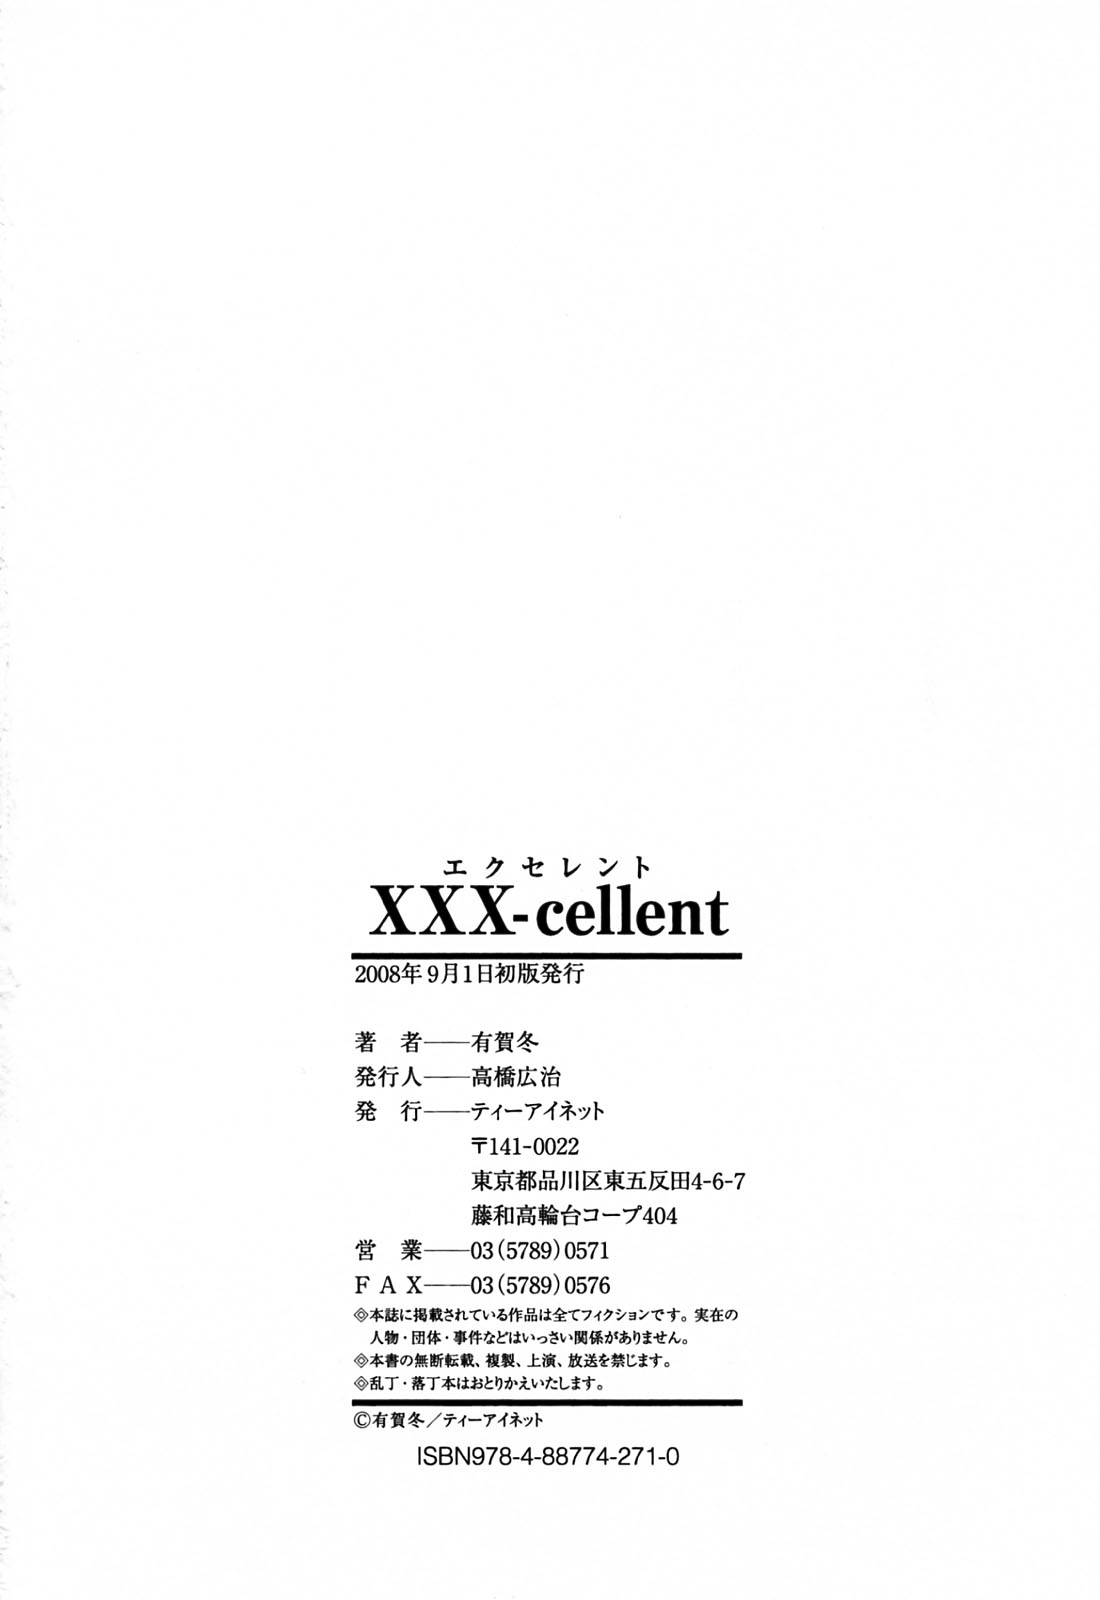 [有賀冬] XXX-cellent